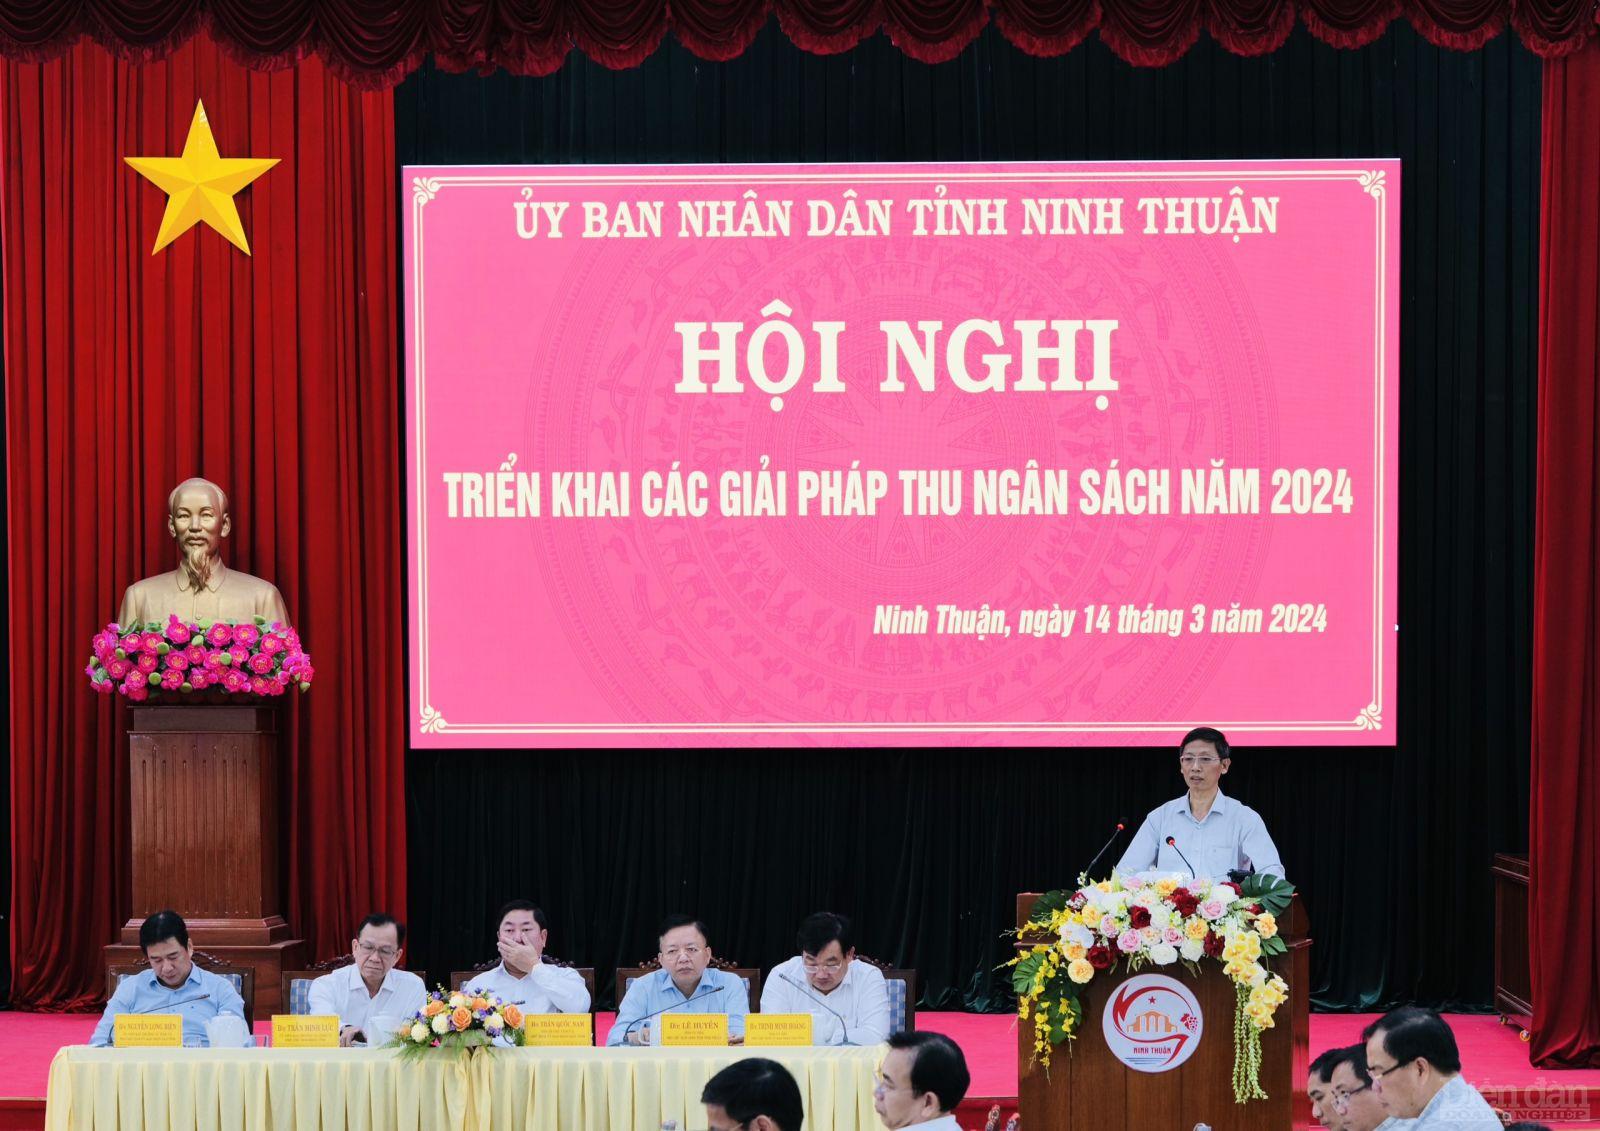 Cục trưởng Thuế tỉnh Ninh Thuận Nguyễn Văn Dũng phát biểu tham luận về những giải pháp để hoàn thành nhiệm vụ thu ngân sách năm 2024.